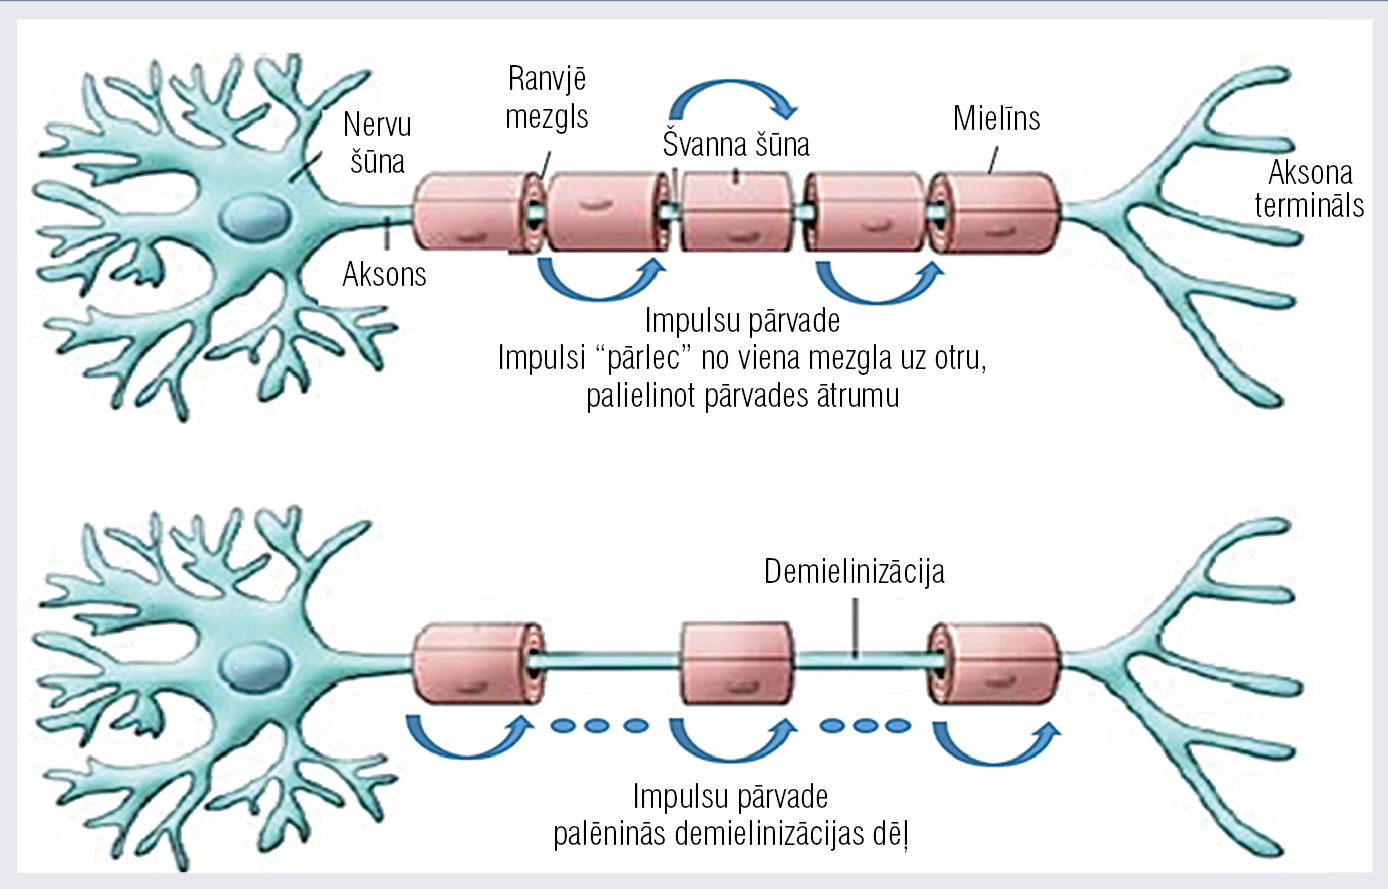 Mielinizētās (A) un demielinizētās (B) perifērās nervu sistēmas nervu šķiedras [33]